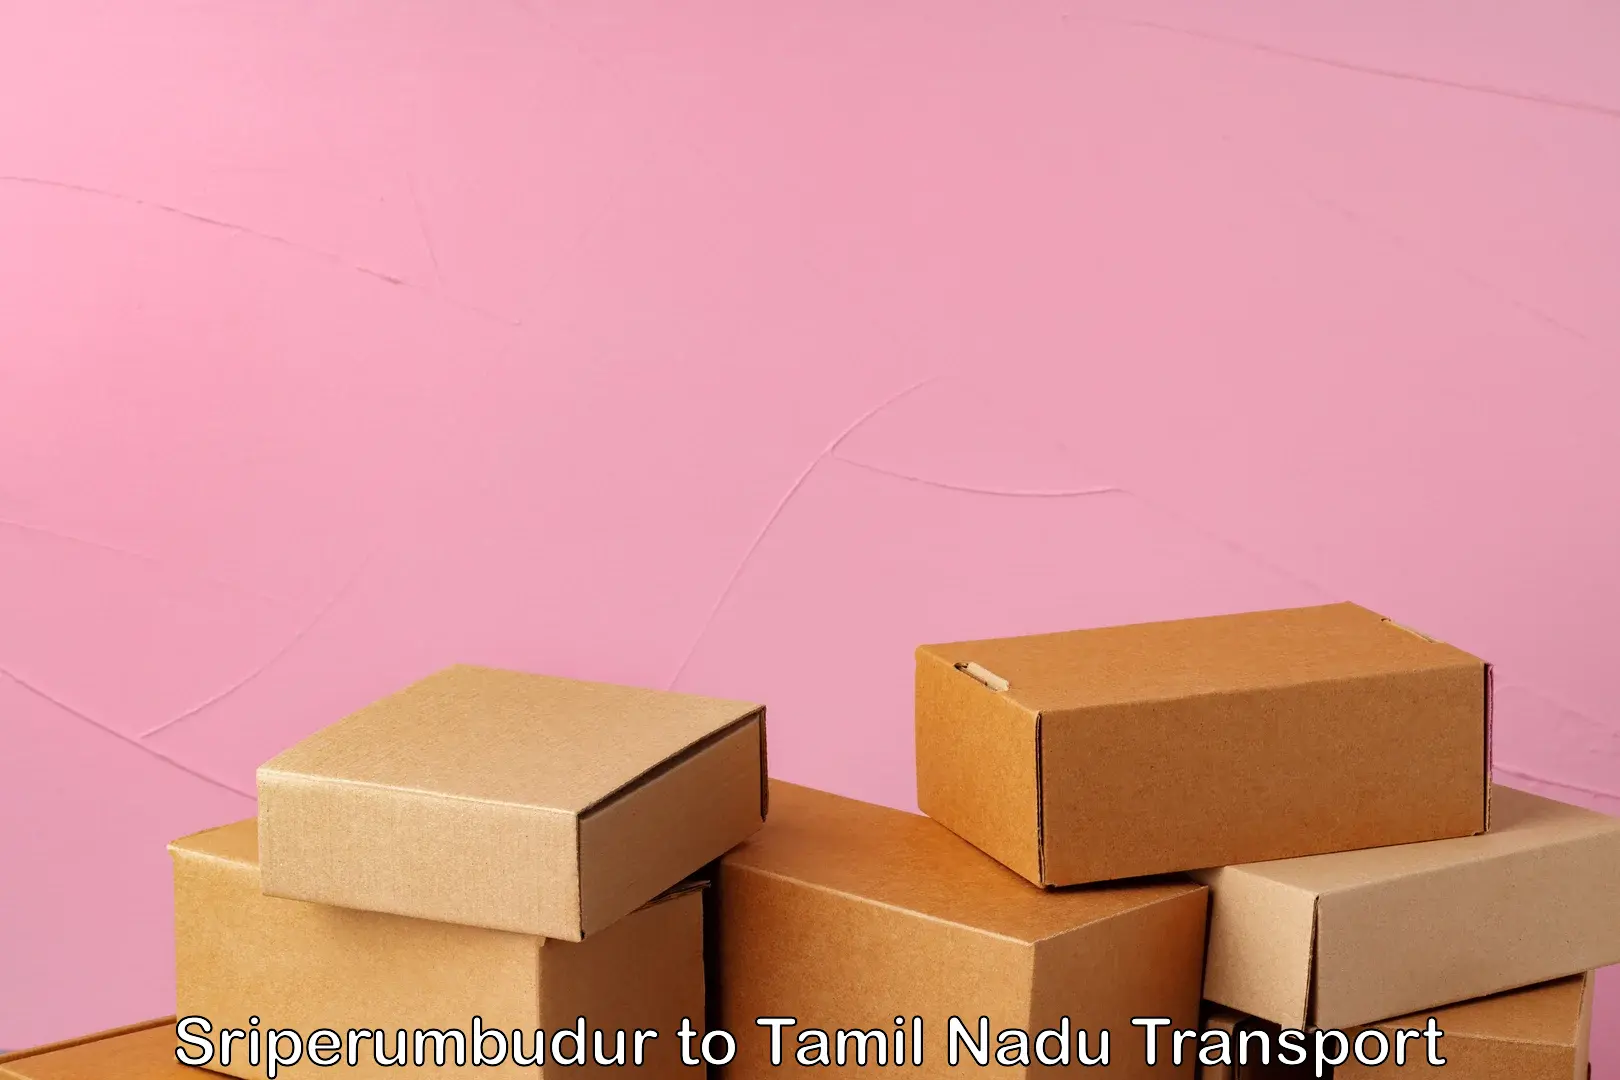 Bike transport service Sriperumbudur to Tamil Nadu